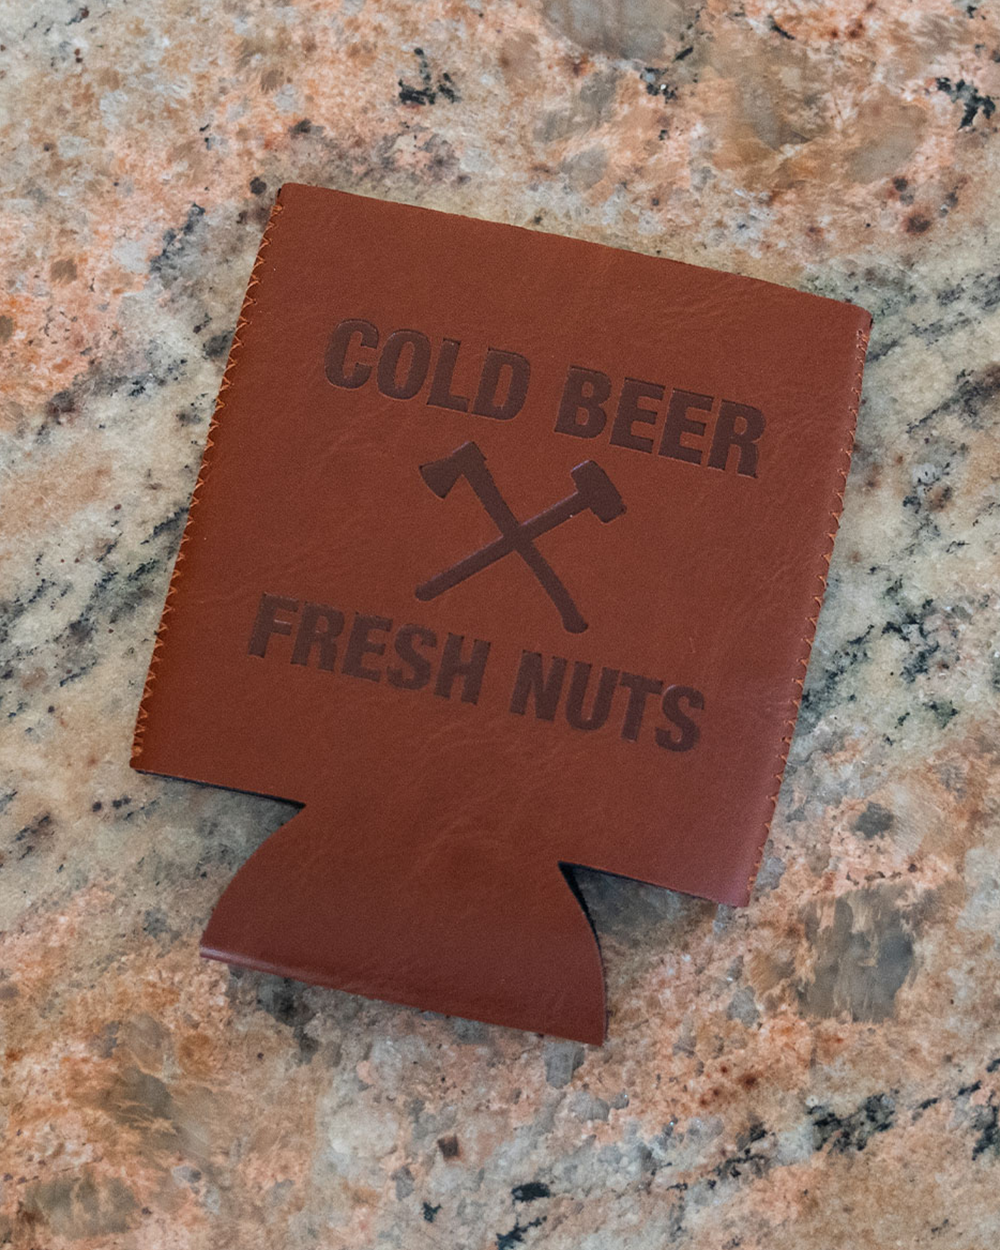 Cold Beer & Fresh Nuts Koozie